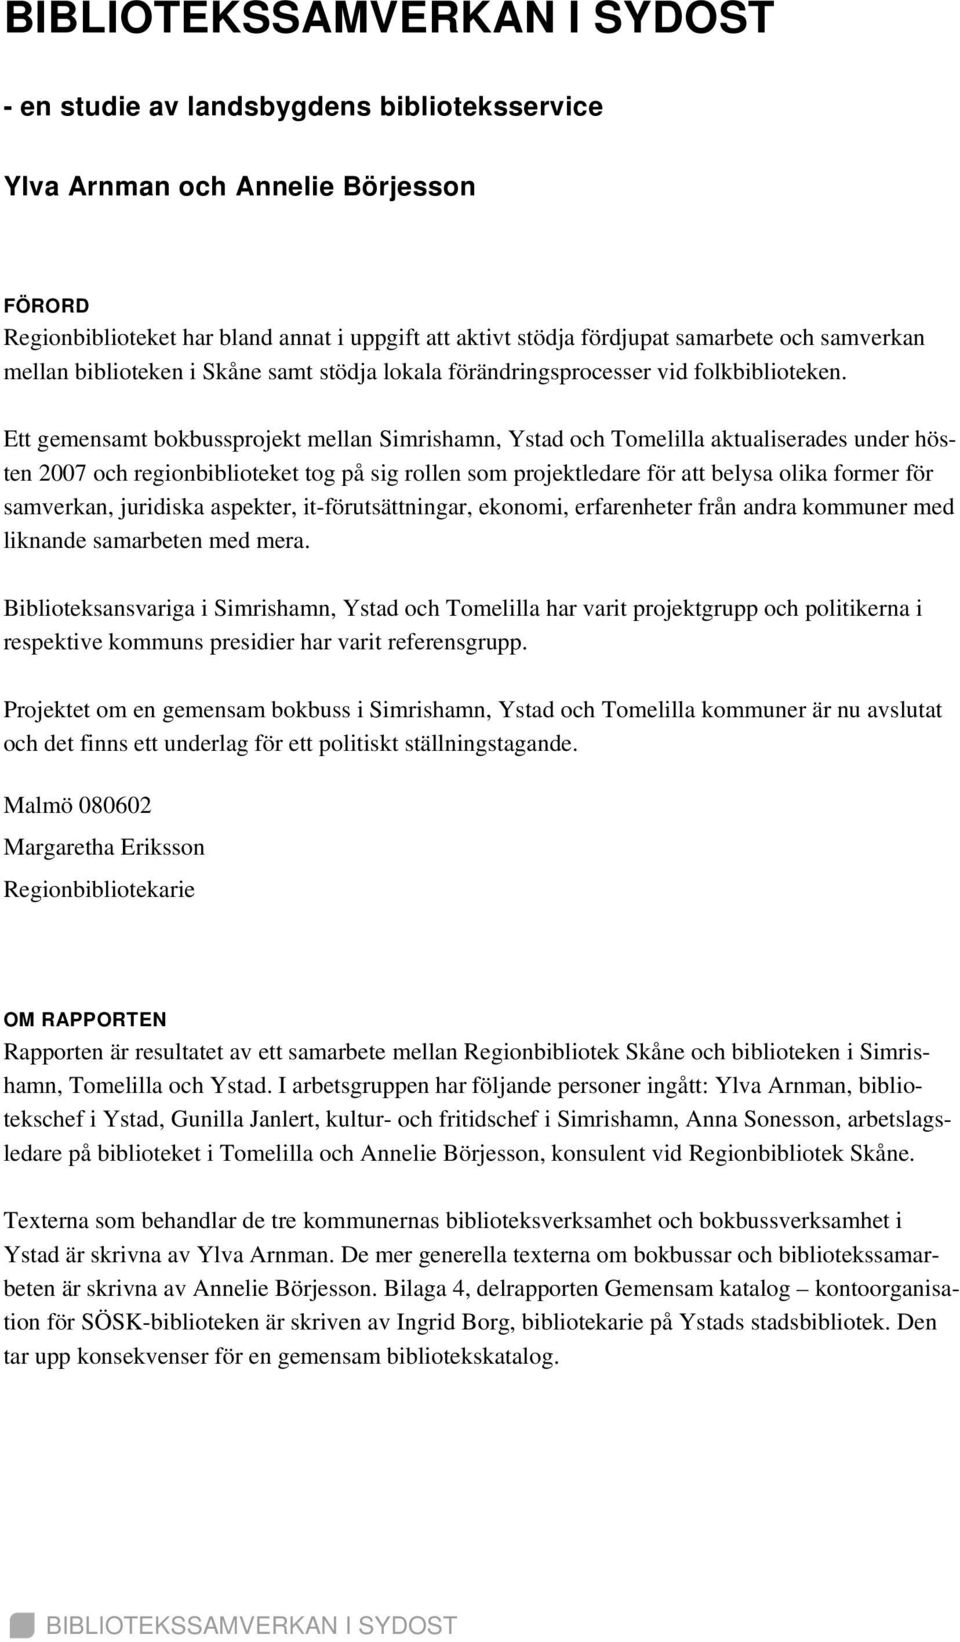 Ett gemensamt bokbussprojekt mellan Simrishamn, Ystad och Tomelilla aktualiserades under hösten 2007 och regionbiblioteket tog på sig rollen som projektledare för att belysa olika former för